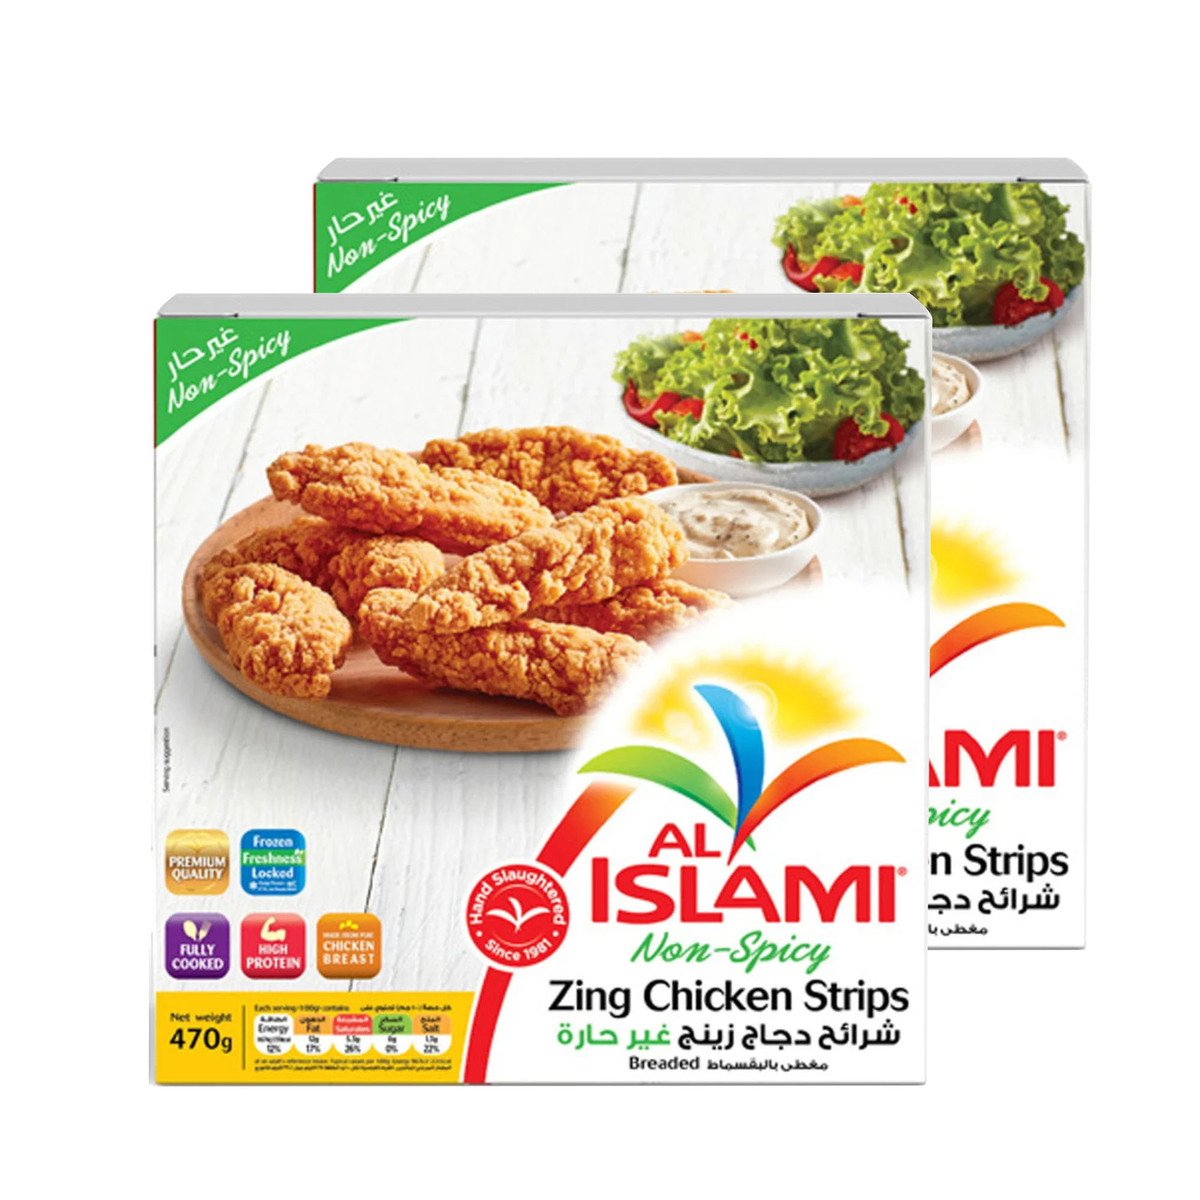 Al Islami Non Spicy Zing Chicken Strips 2 x 470 g